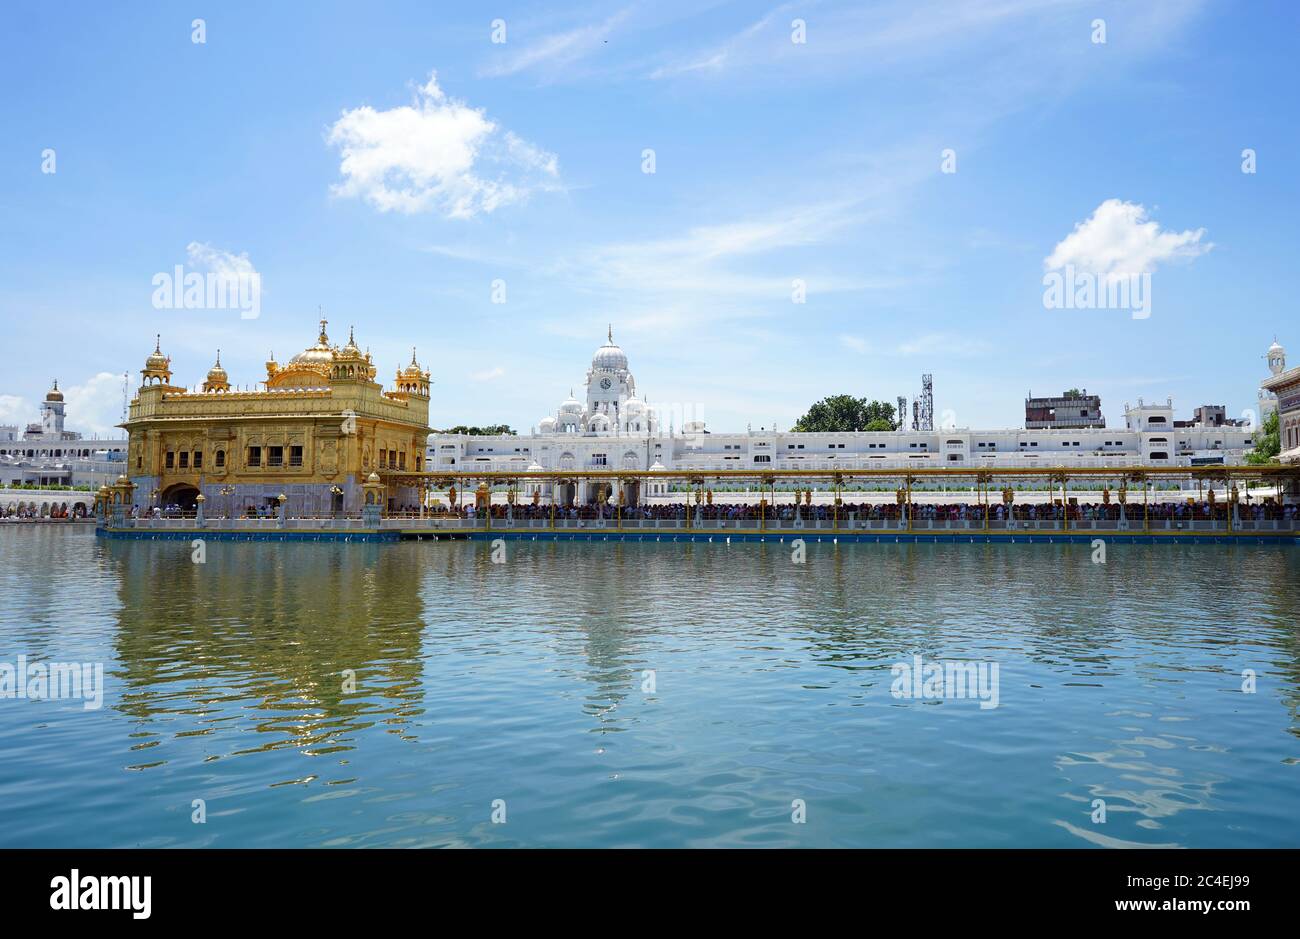 Tempio dorato, Harmandir Sahib Gurdwara, Amritsar, Punjab, India Tempio Sikh molto famoso in India Tempio placcato oro in mezzo all'acqua Foto Stock